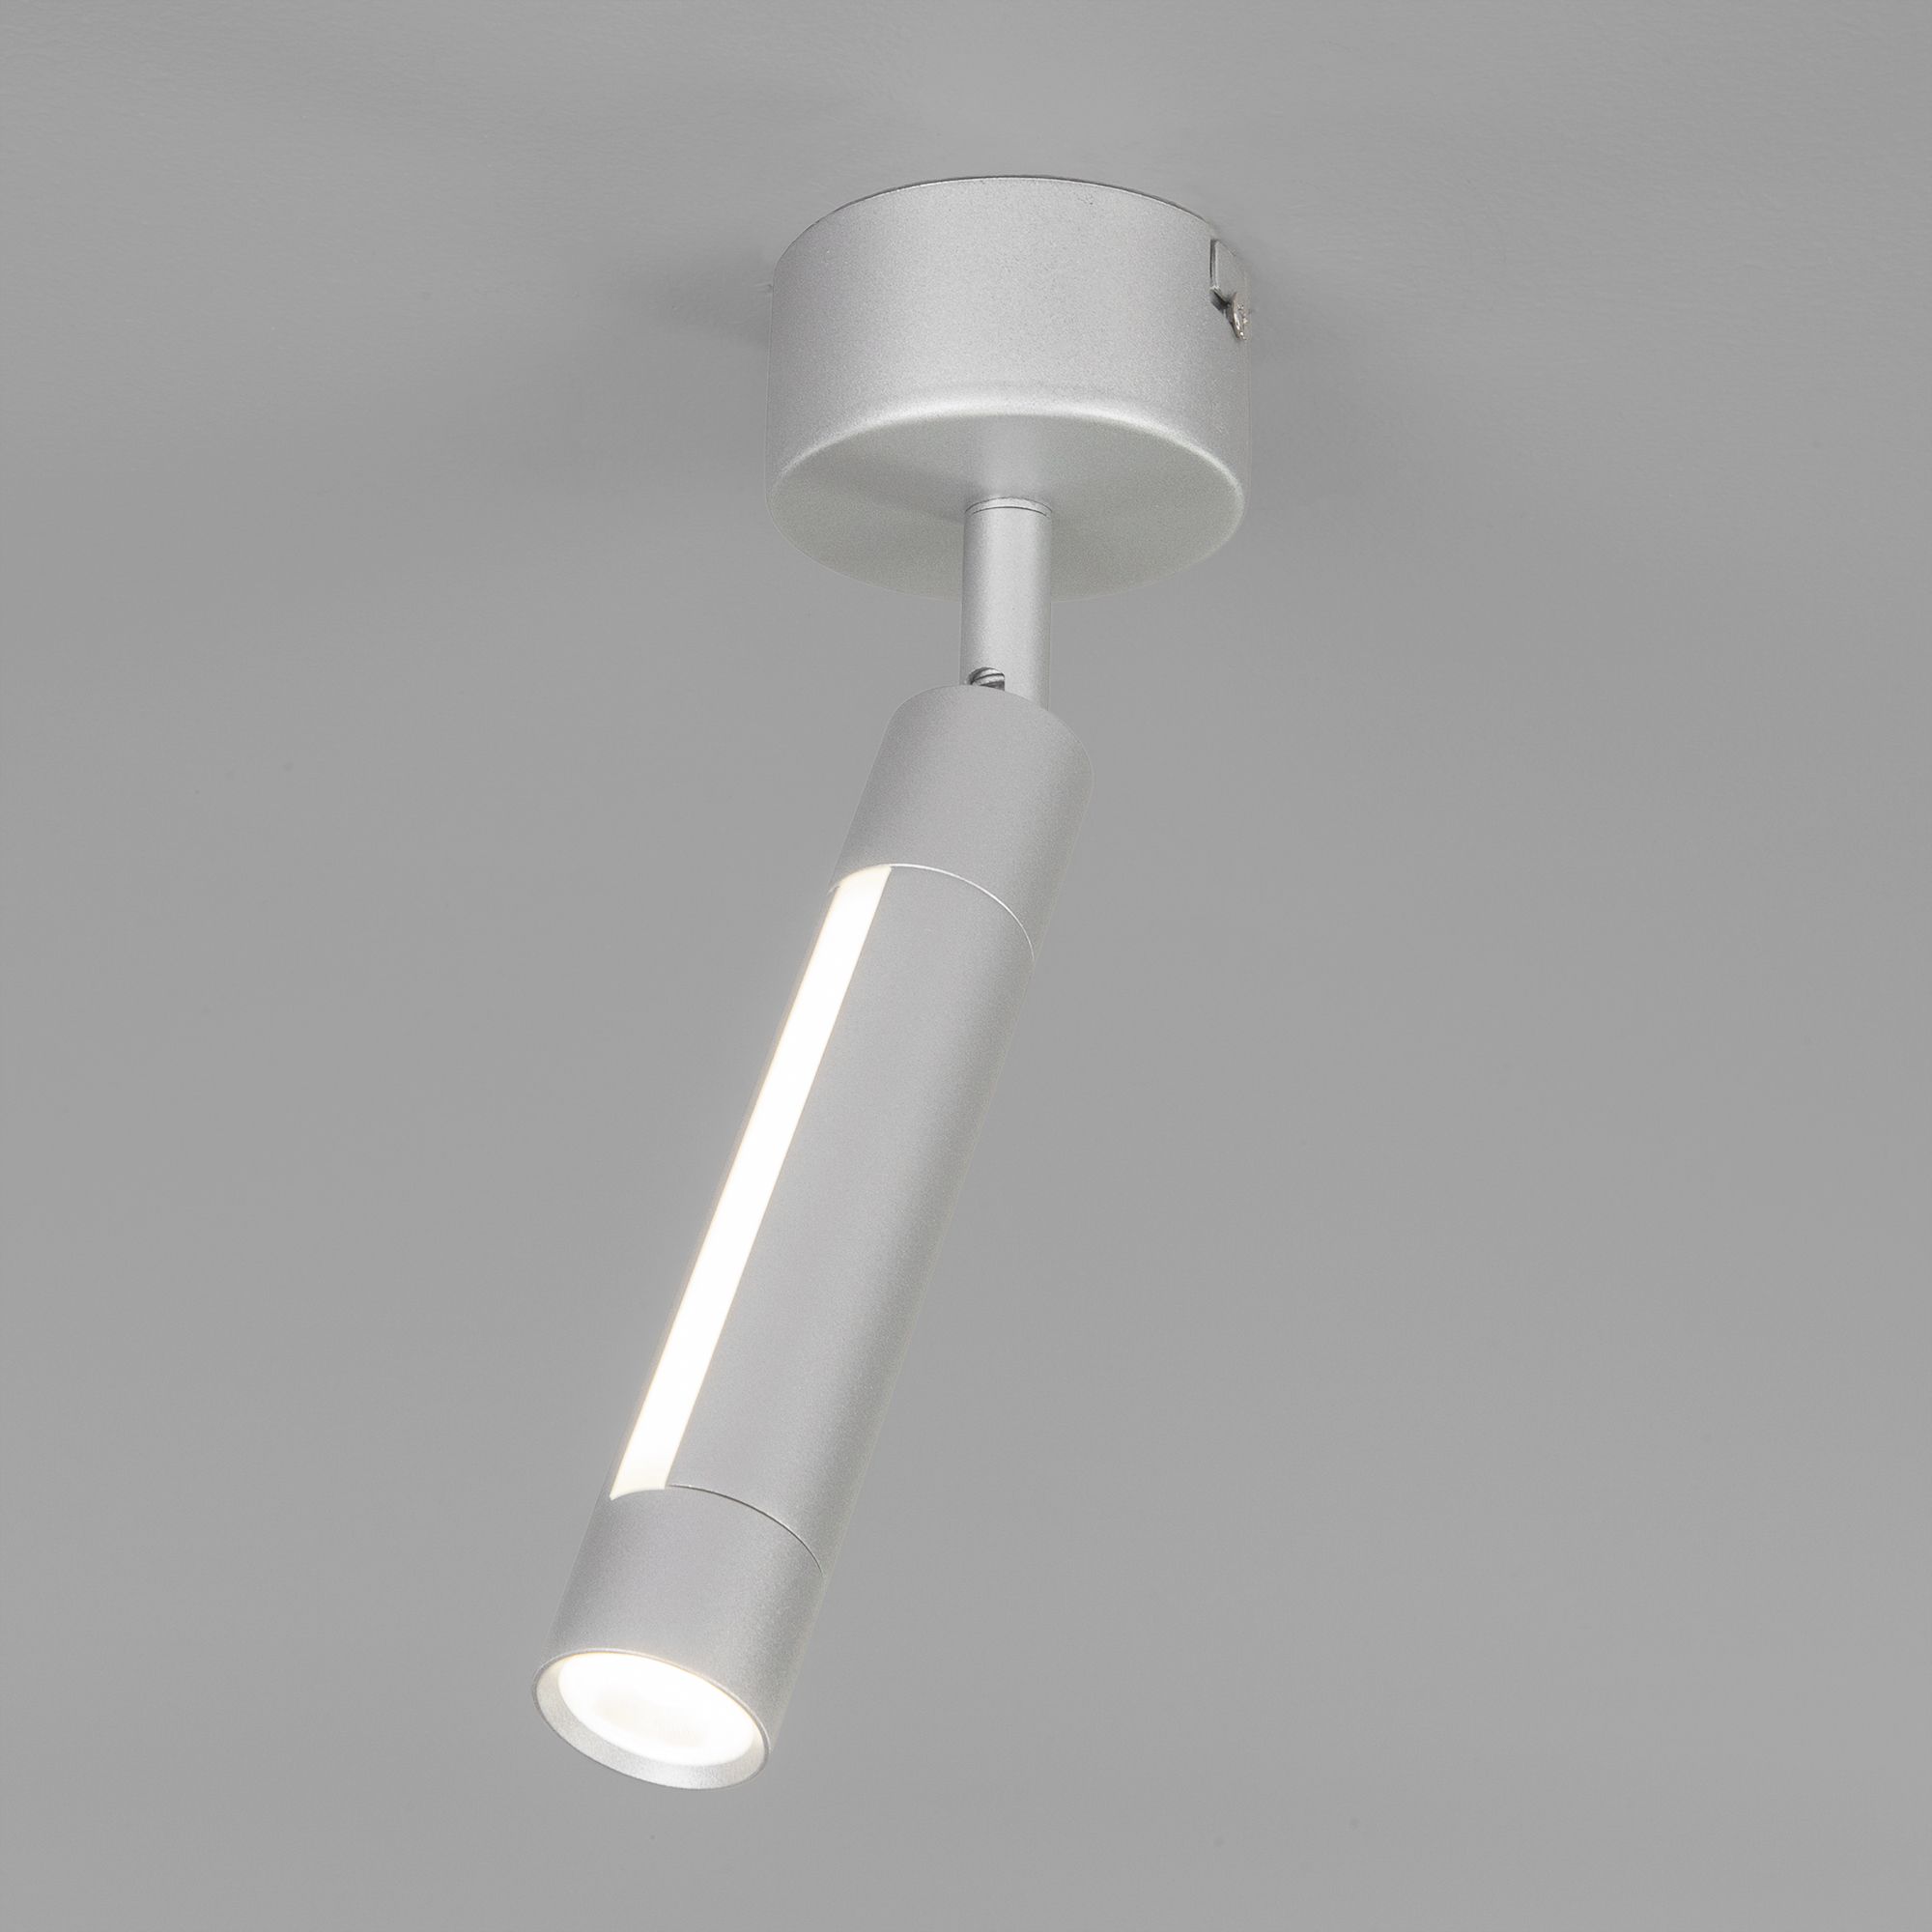 Настенный светодиодный светильник в стиле минимализм Eurosvet Strong 20084/1 LED серебро. Фото 1